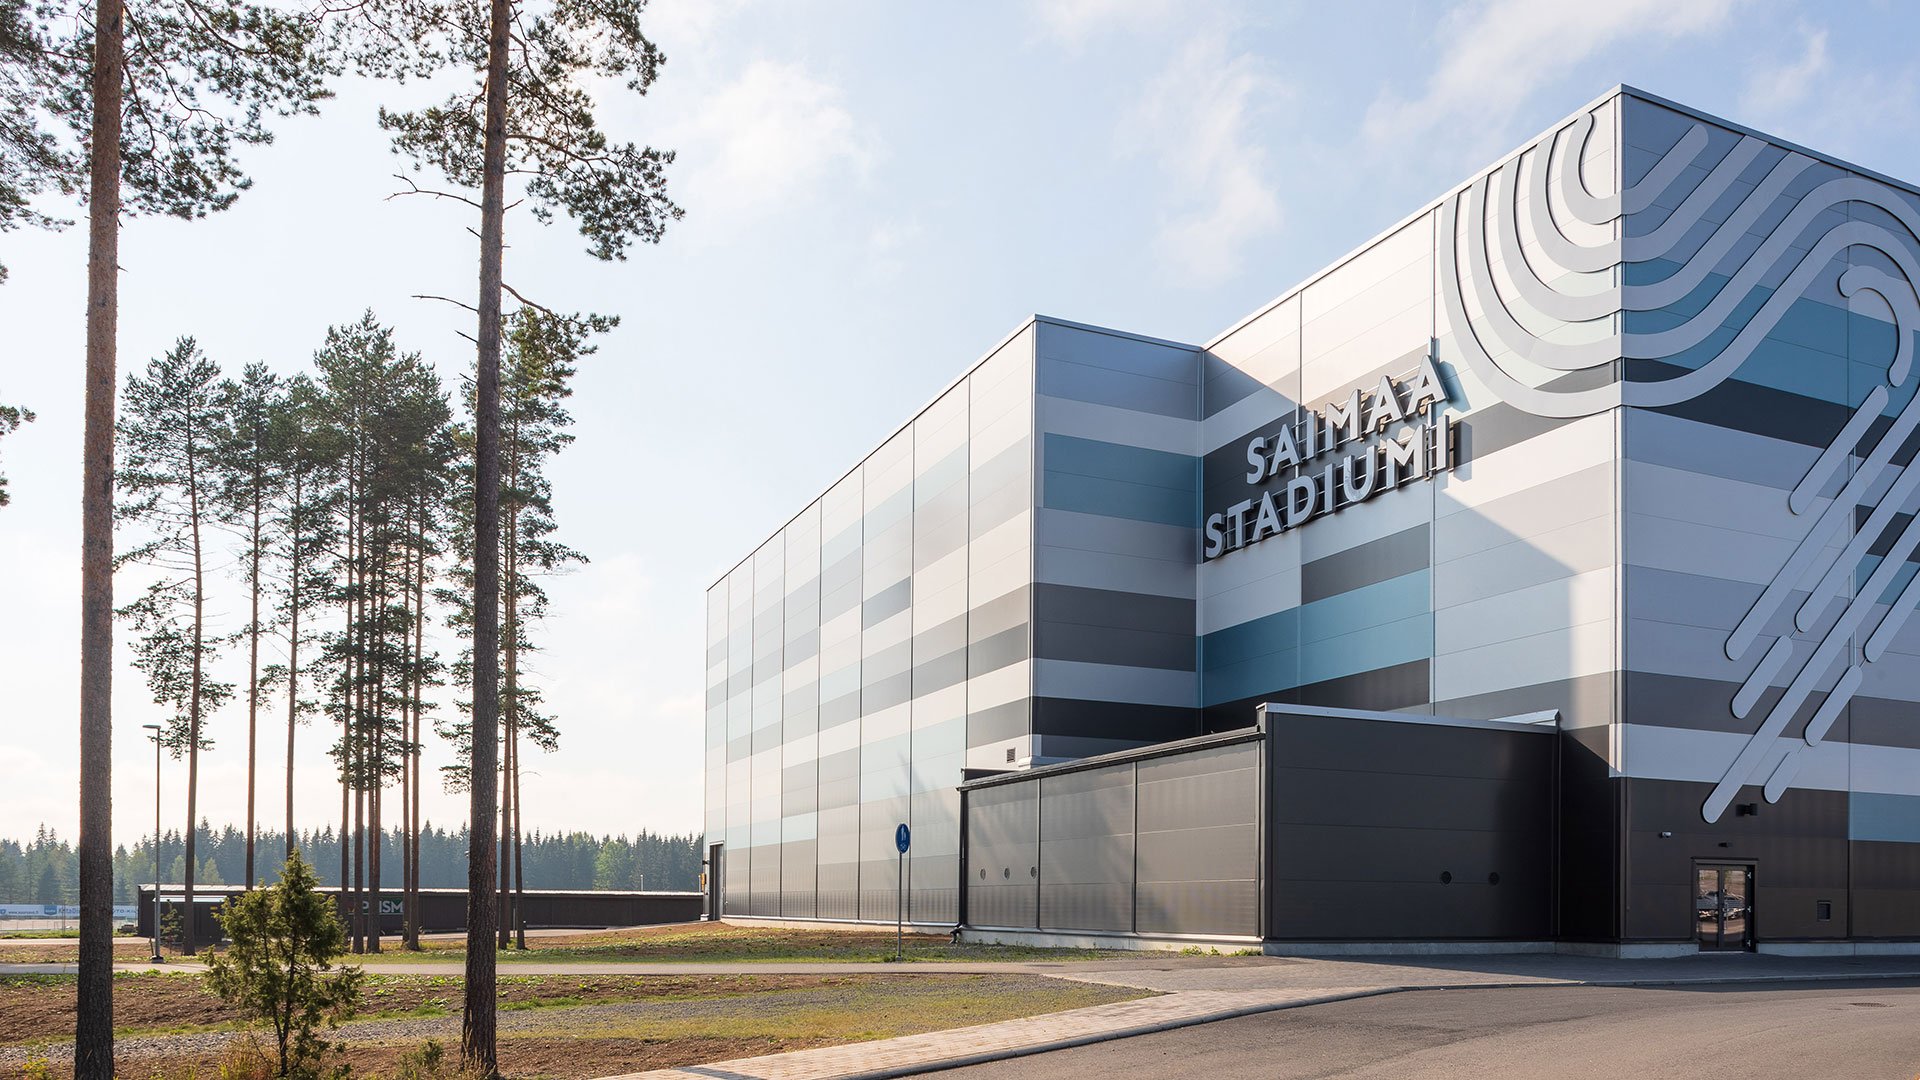 Saimaa Stadium, Mikkeli